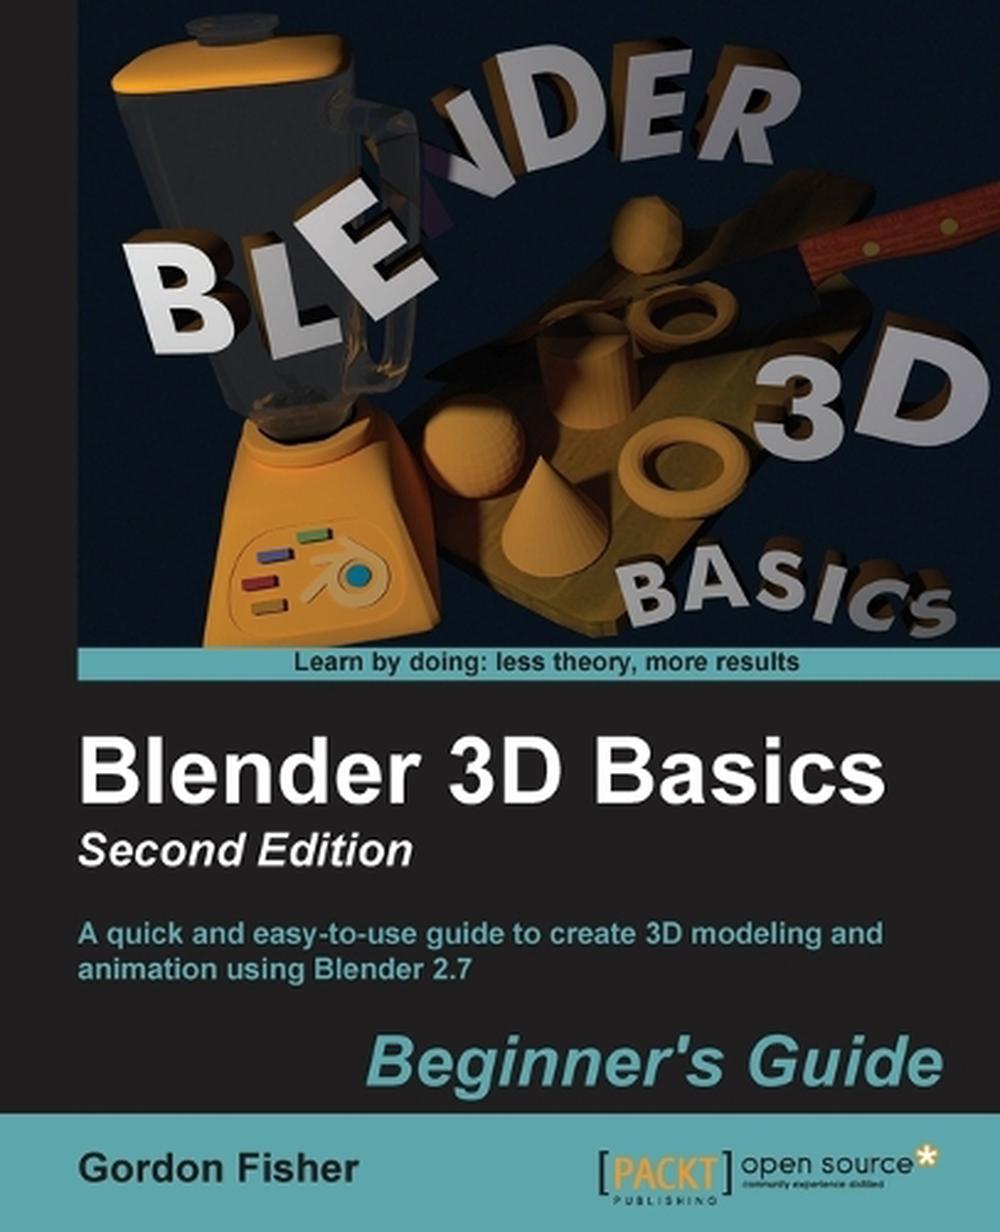 blender 3d basics pdf free download